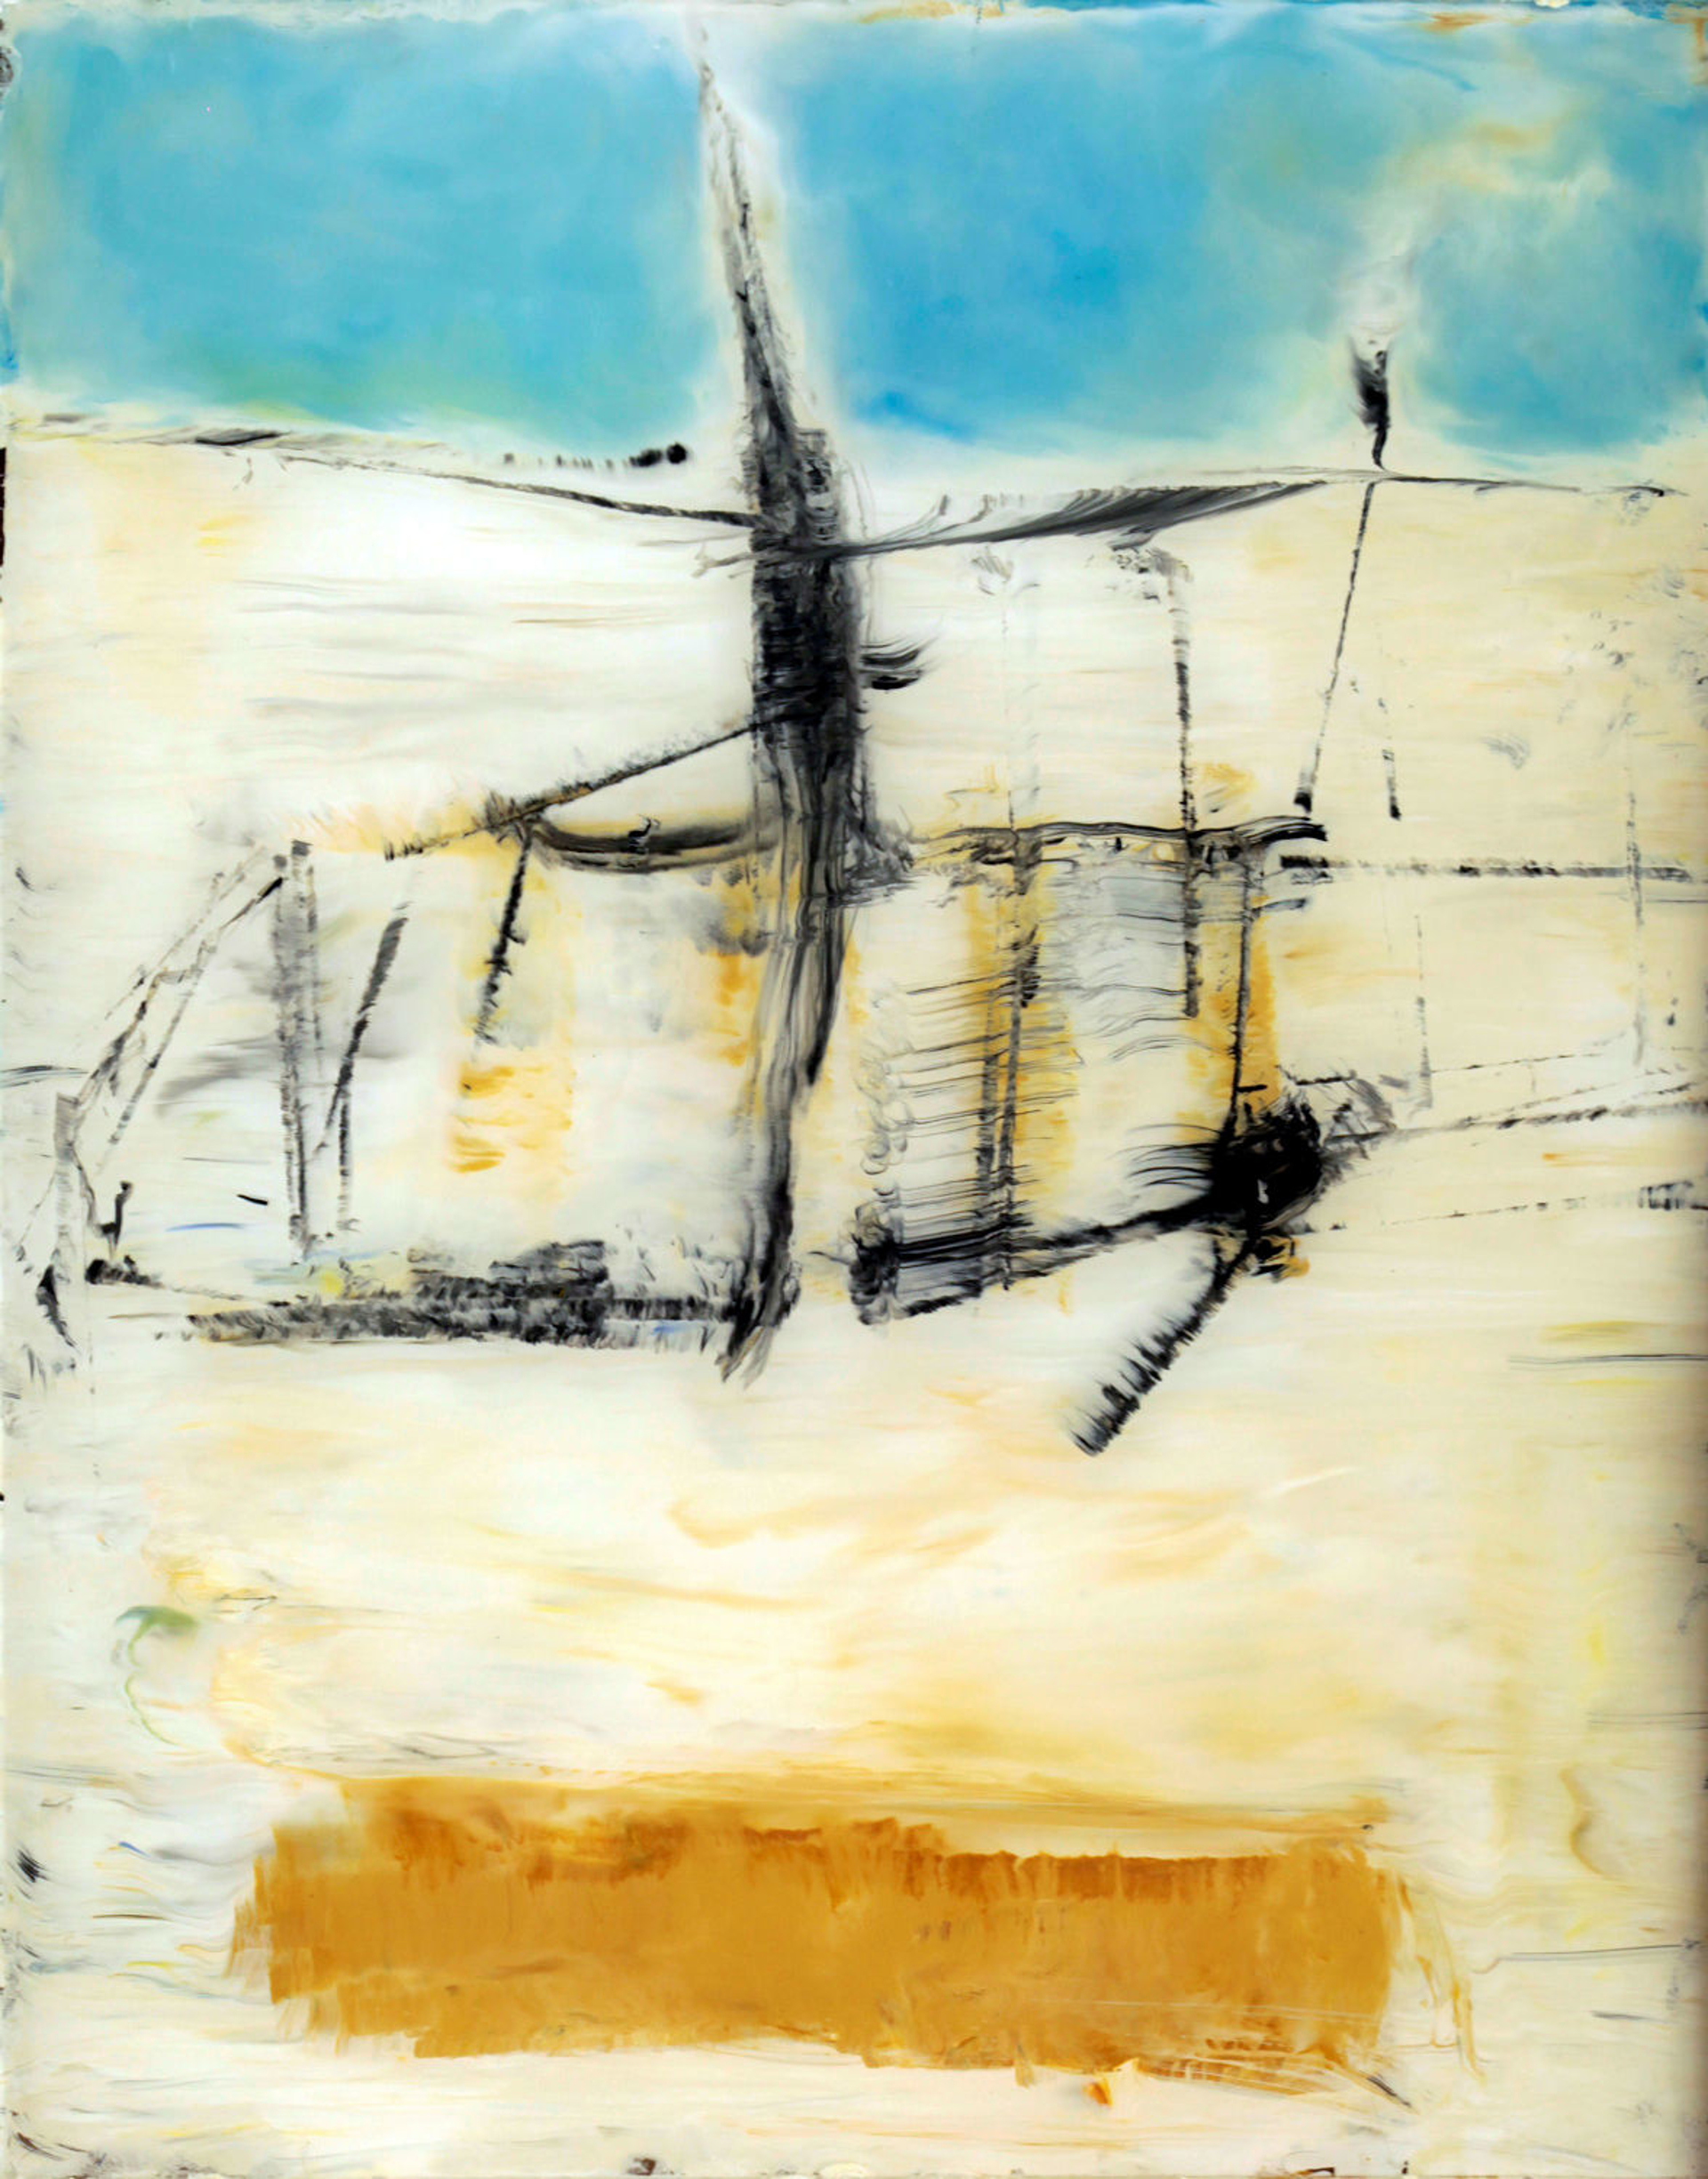 Vessel by John McCaw